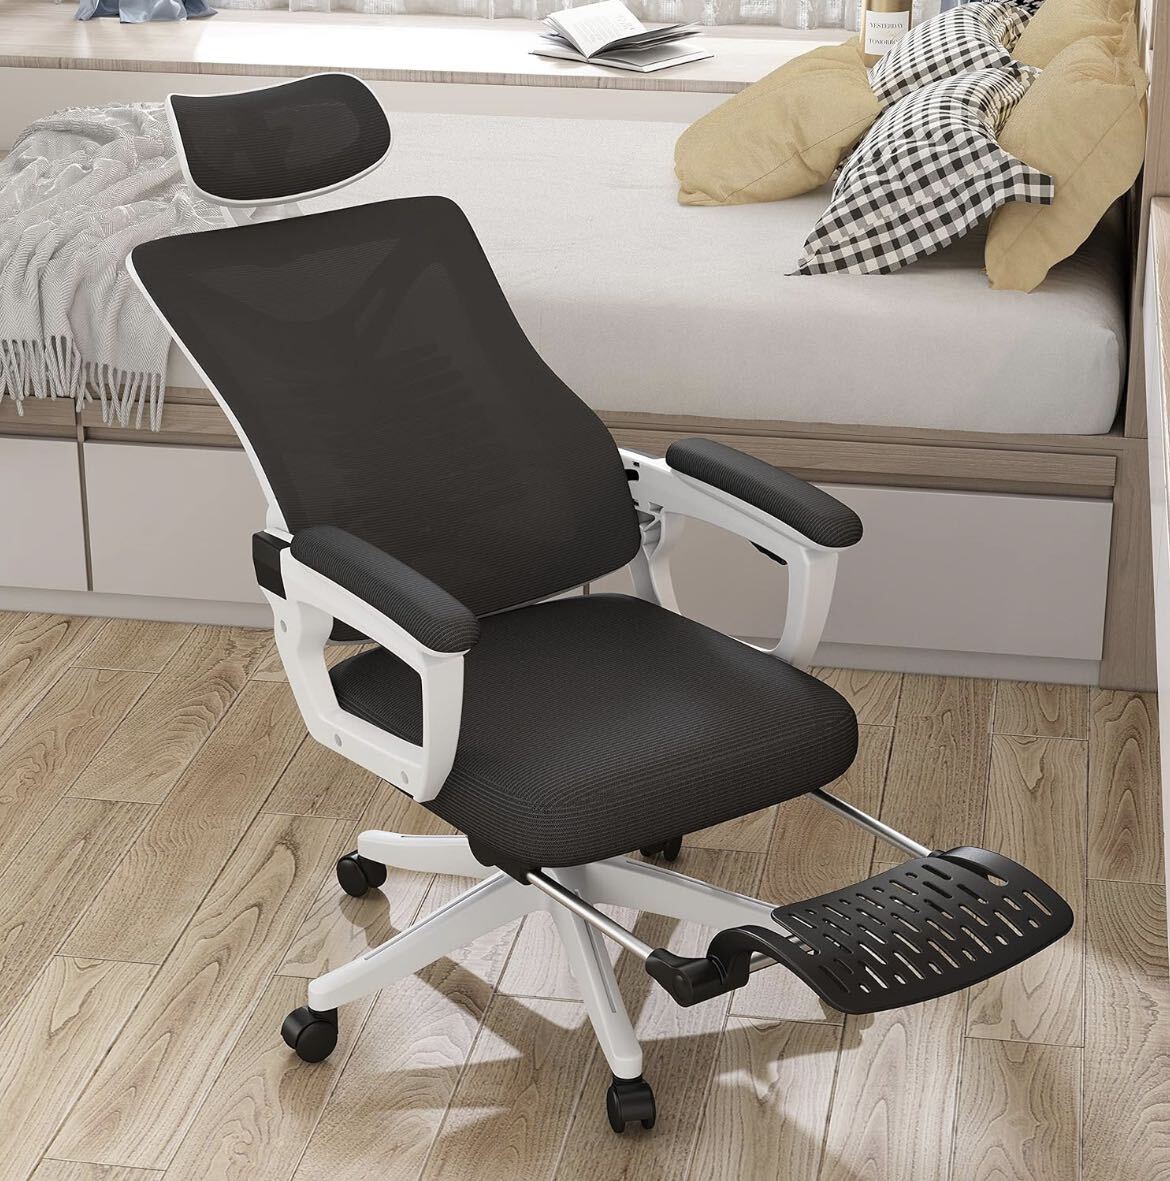 オフィスチェア 椅子 テレワーク 疲れない デスクチェア ワークチェア 人間工学椅子 可動式ランバーサポート 高反発座面 通気性 メッシュの画像1